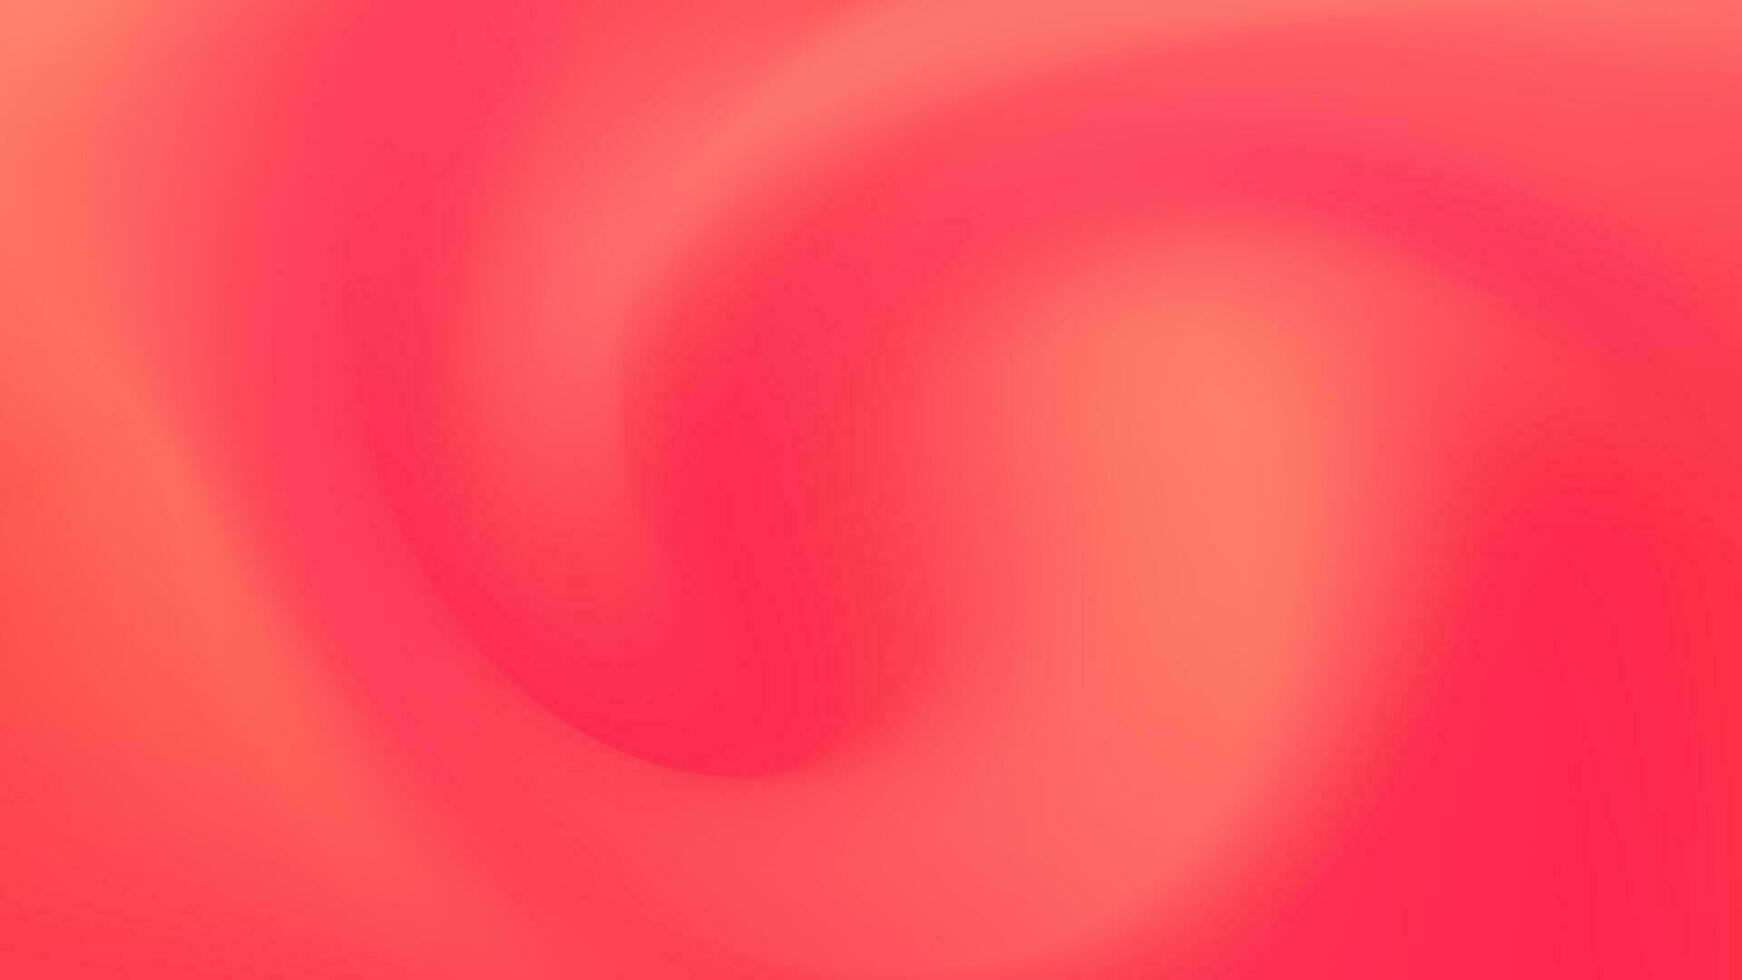 roze helling abstract achtergrond. studio achtergrond voor parel schoonheidsmiddelen vector